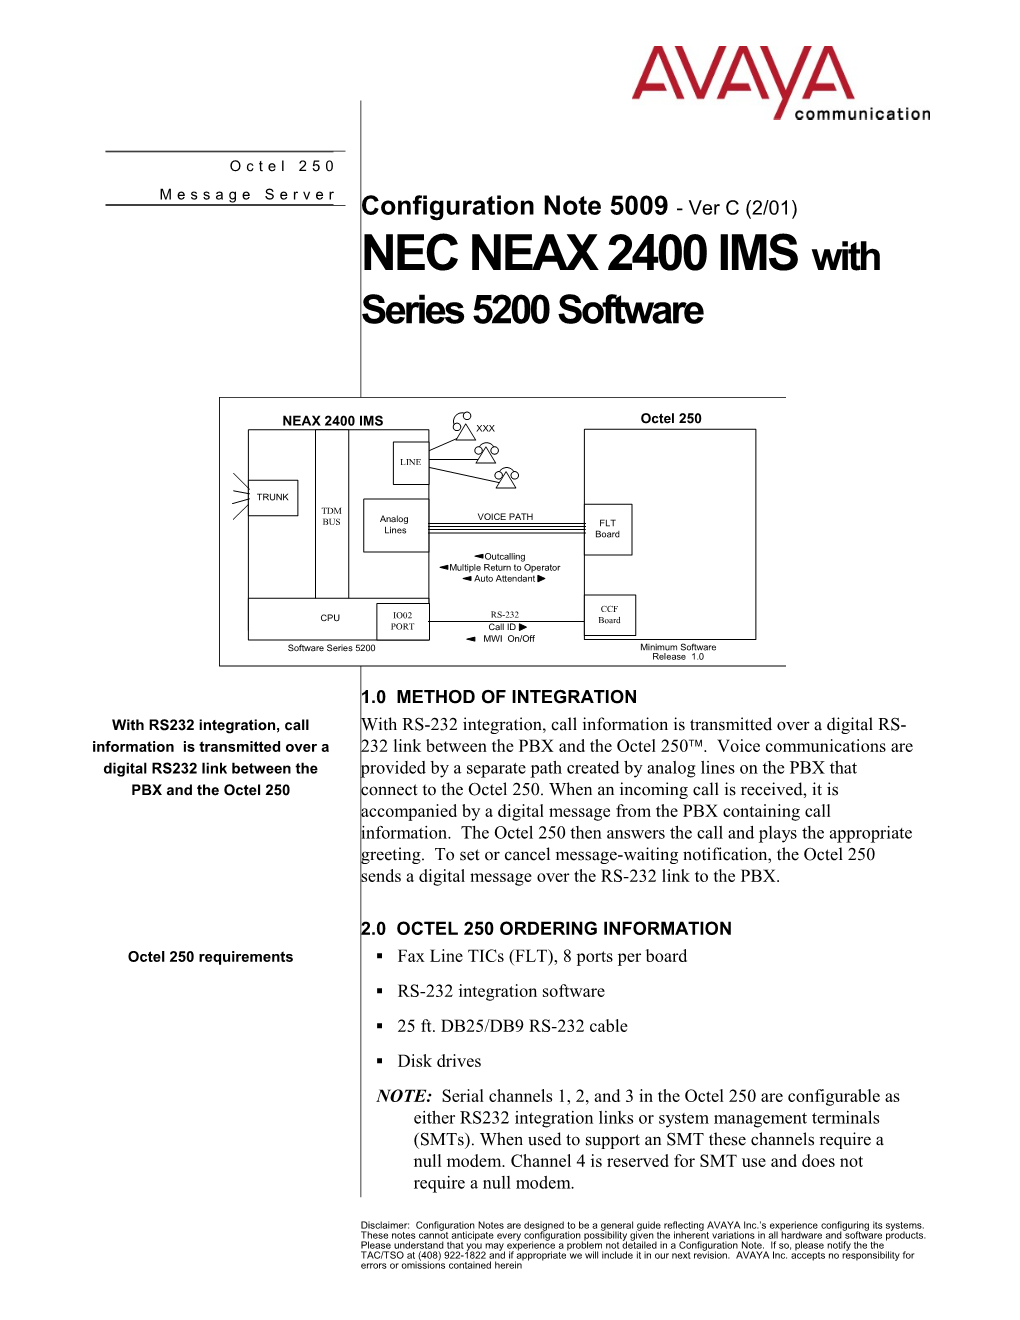 NEC NEAX 2400 IMS/Series 5200 Software Confidential1